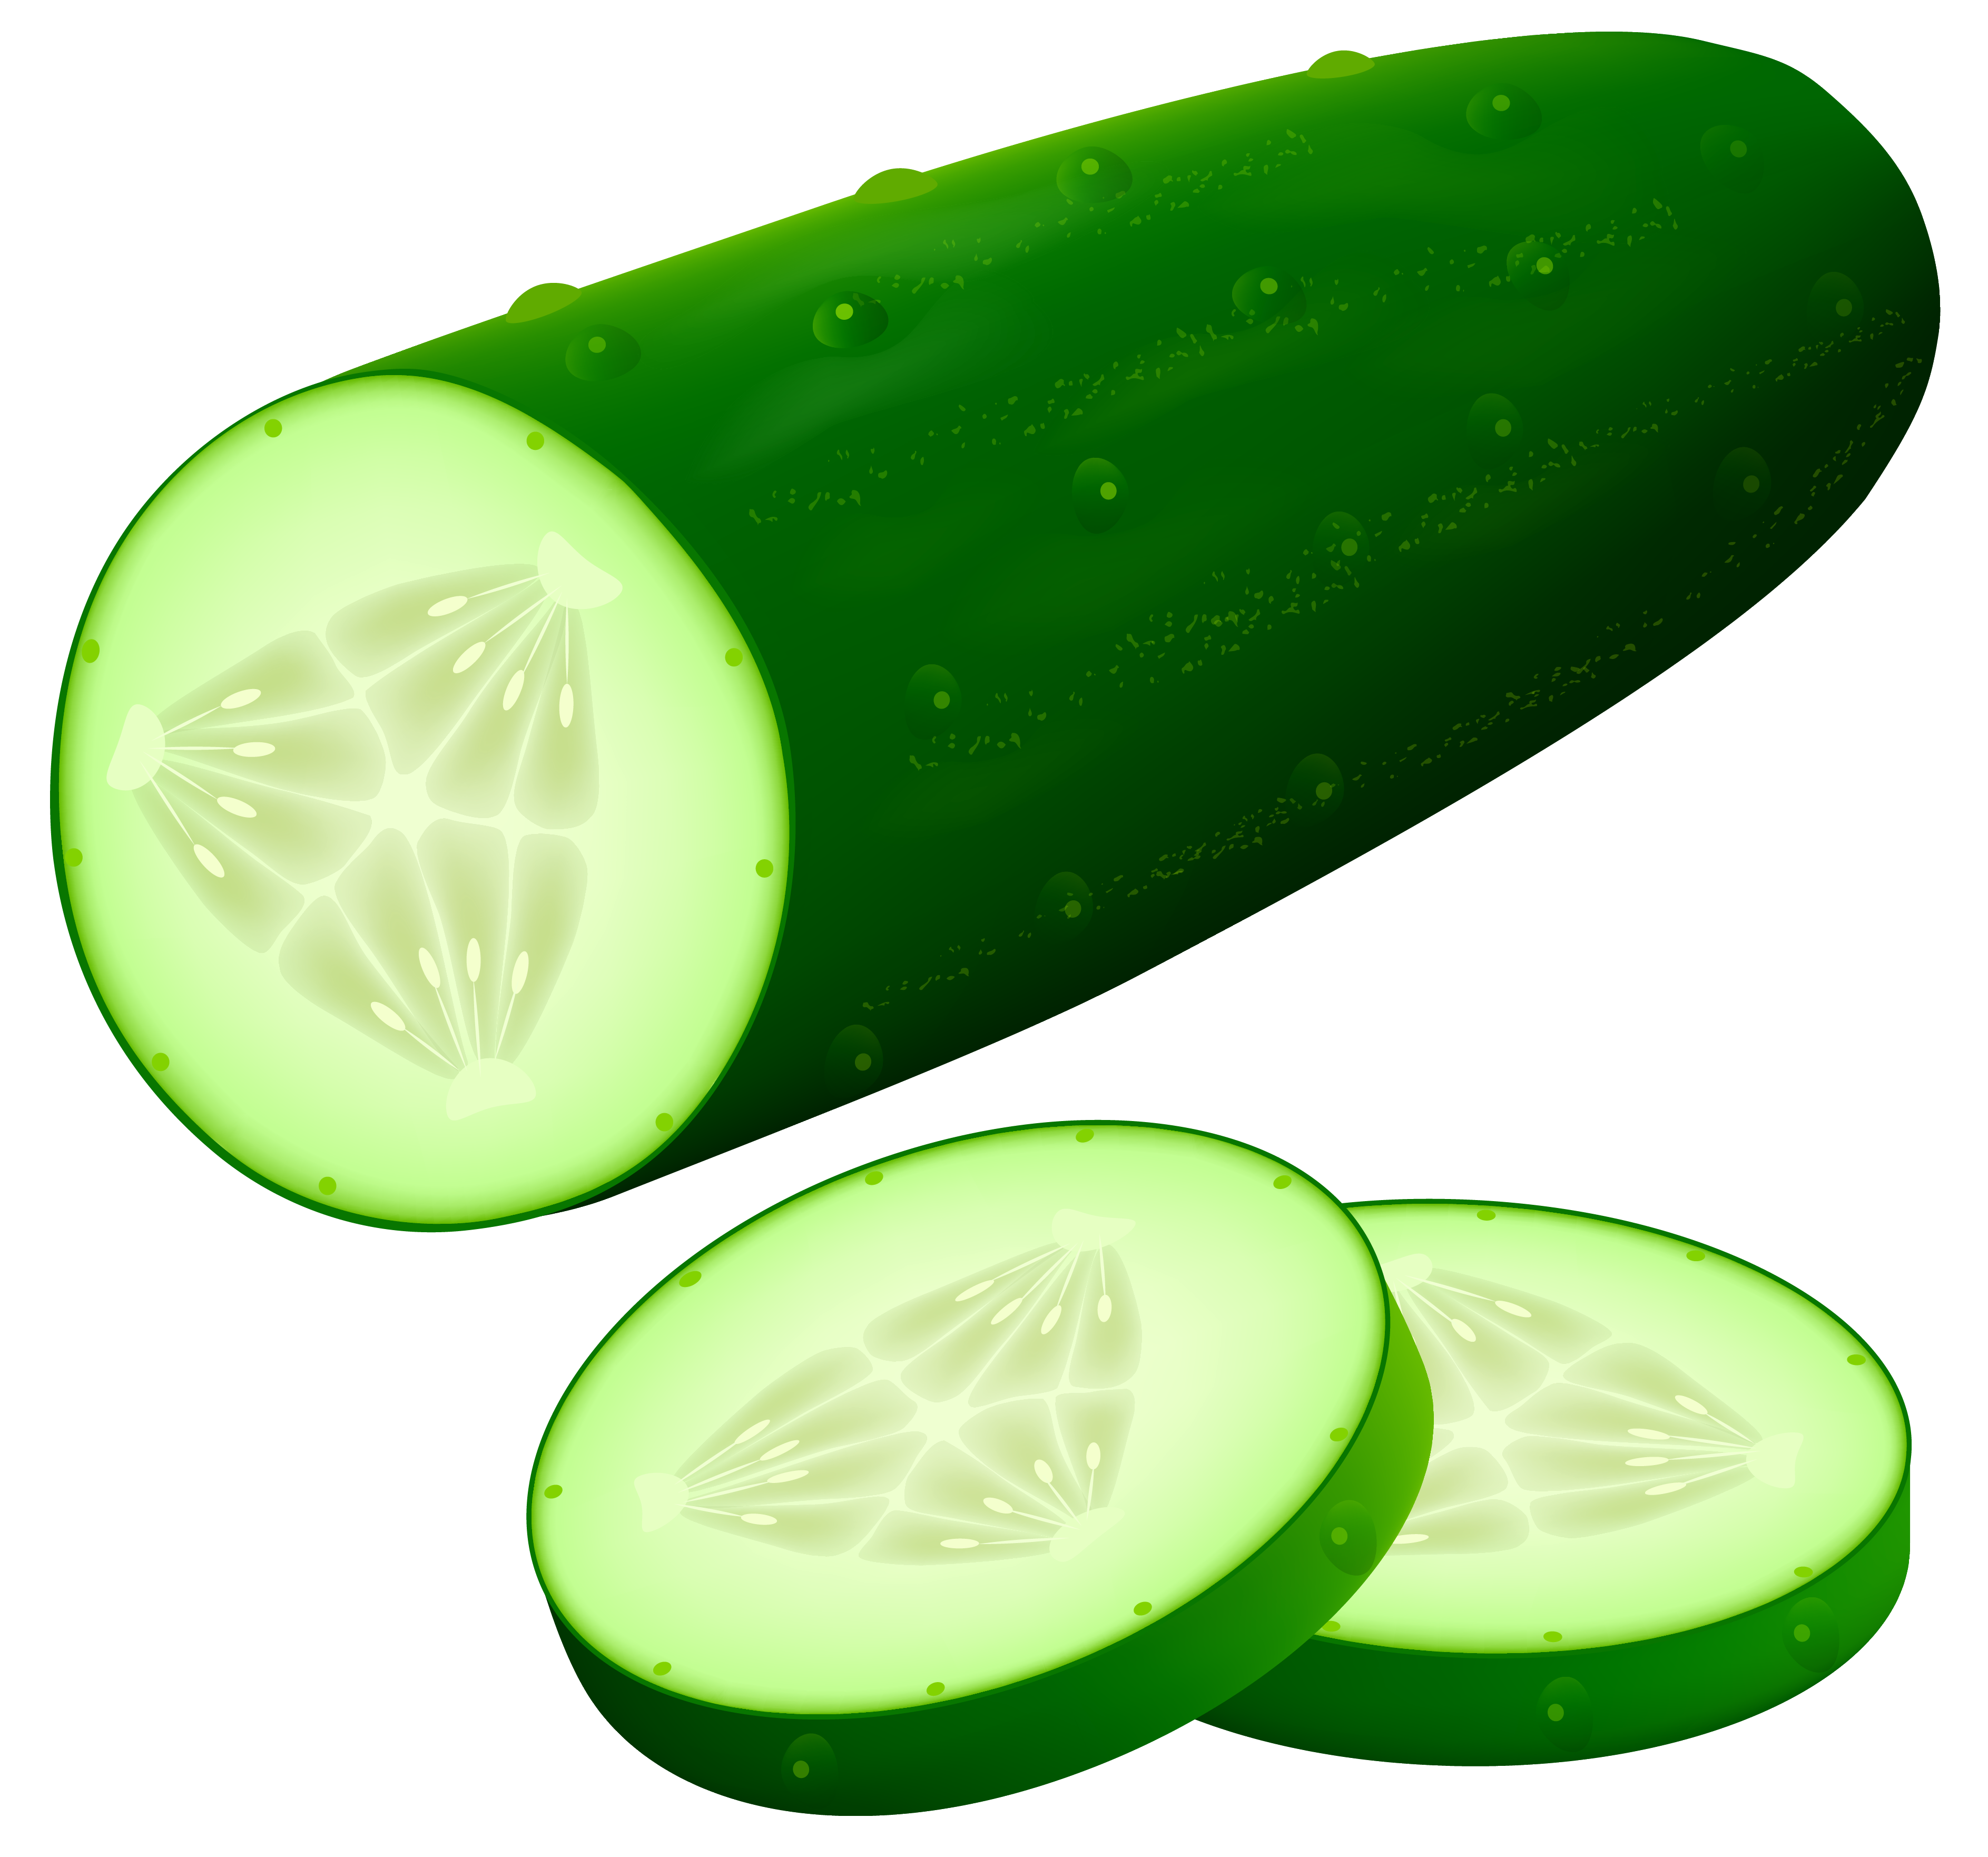 Cucumber clipart image web. C